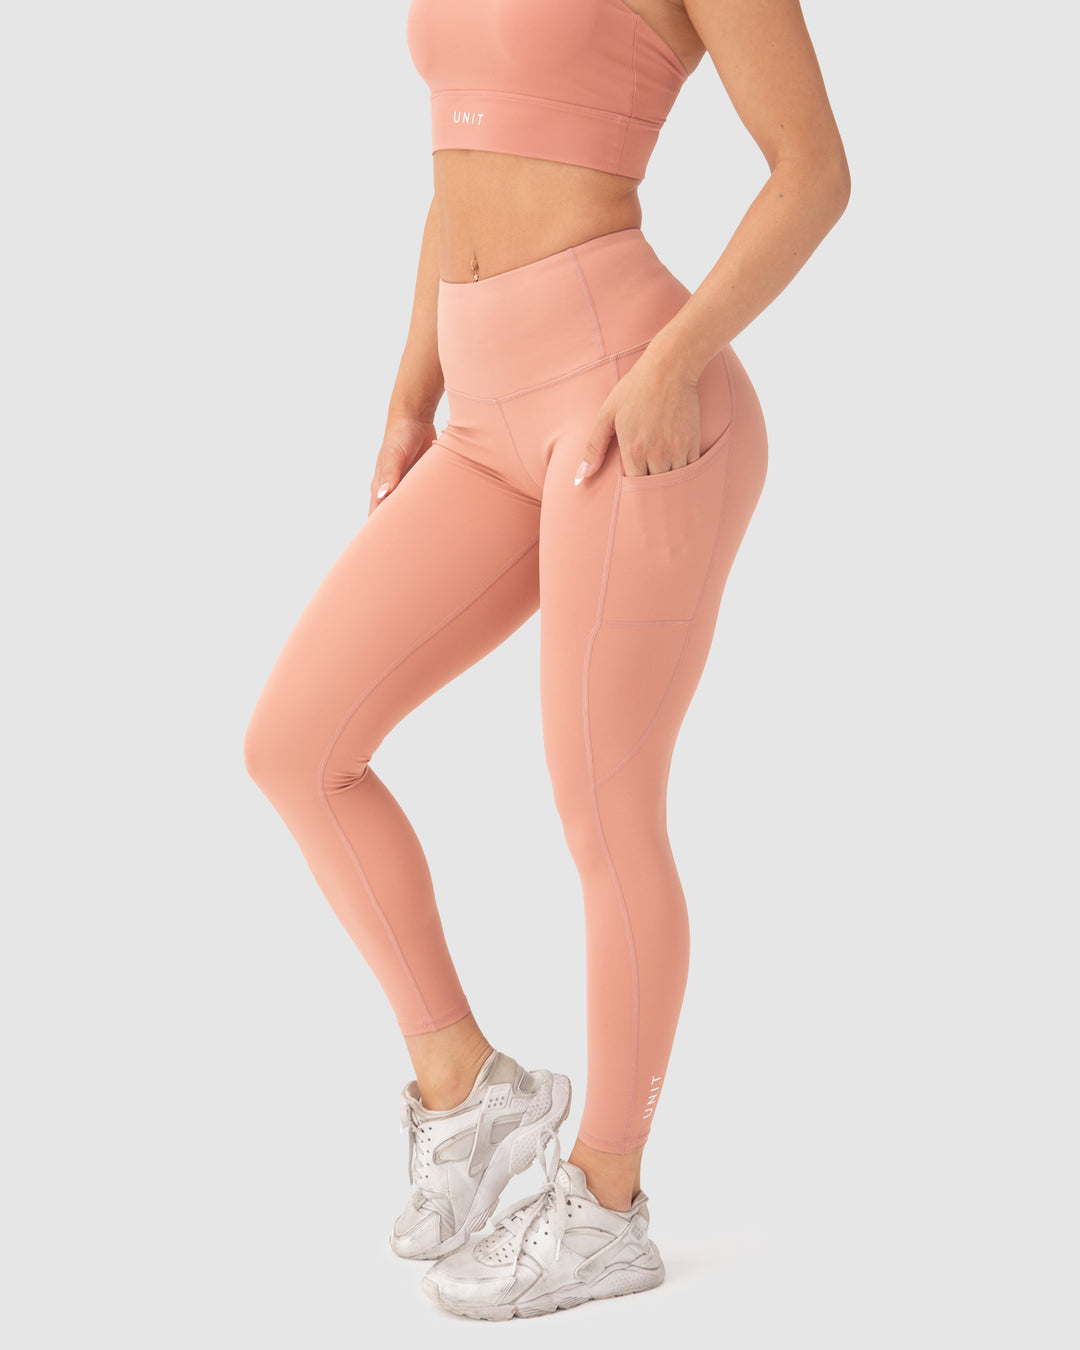 UNIT Slay Active Legging – UNIT Clothing